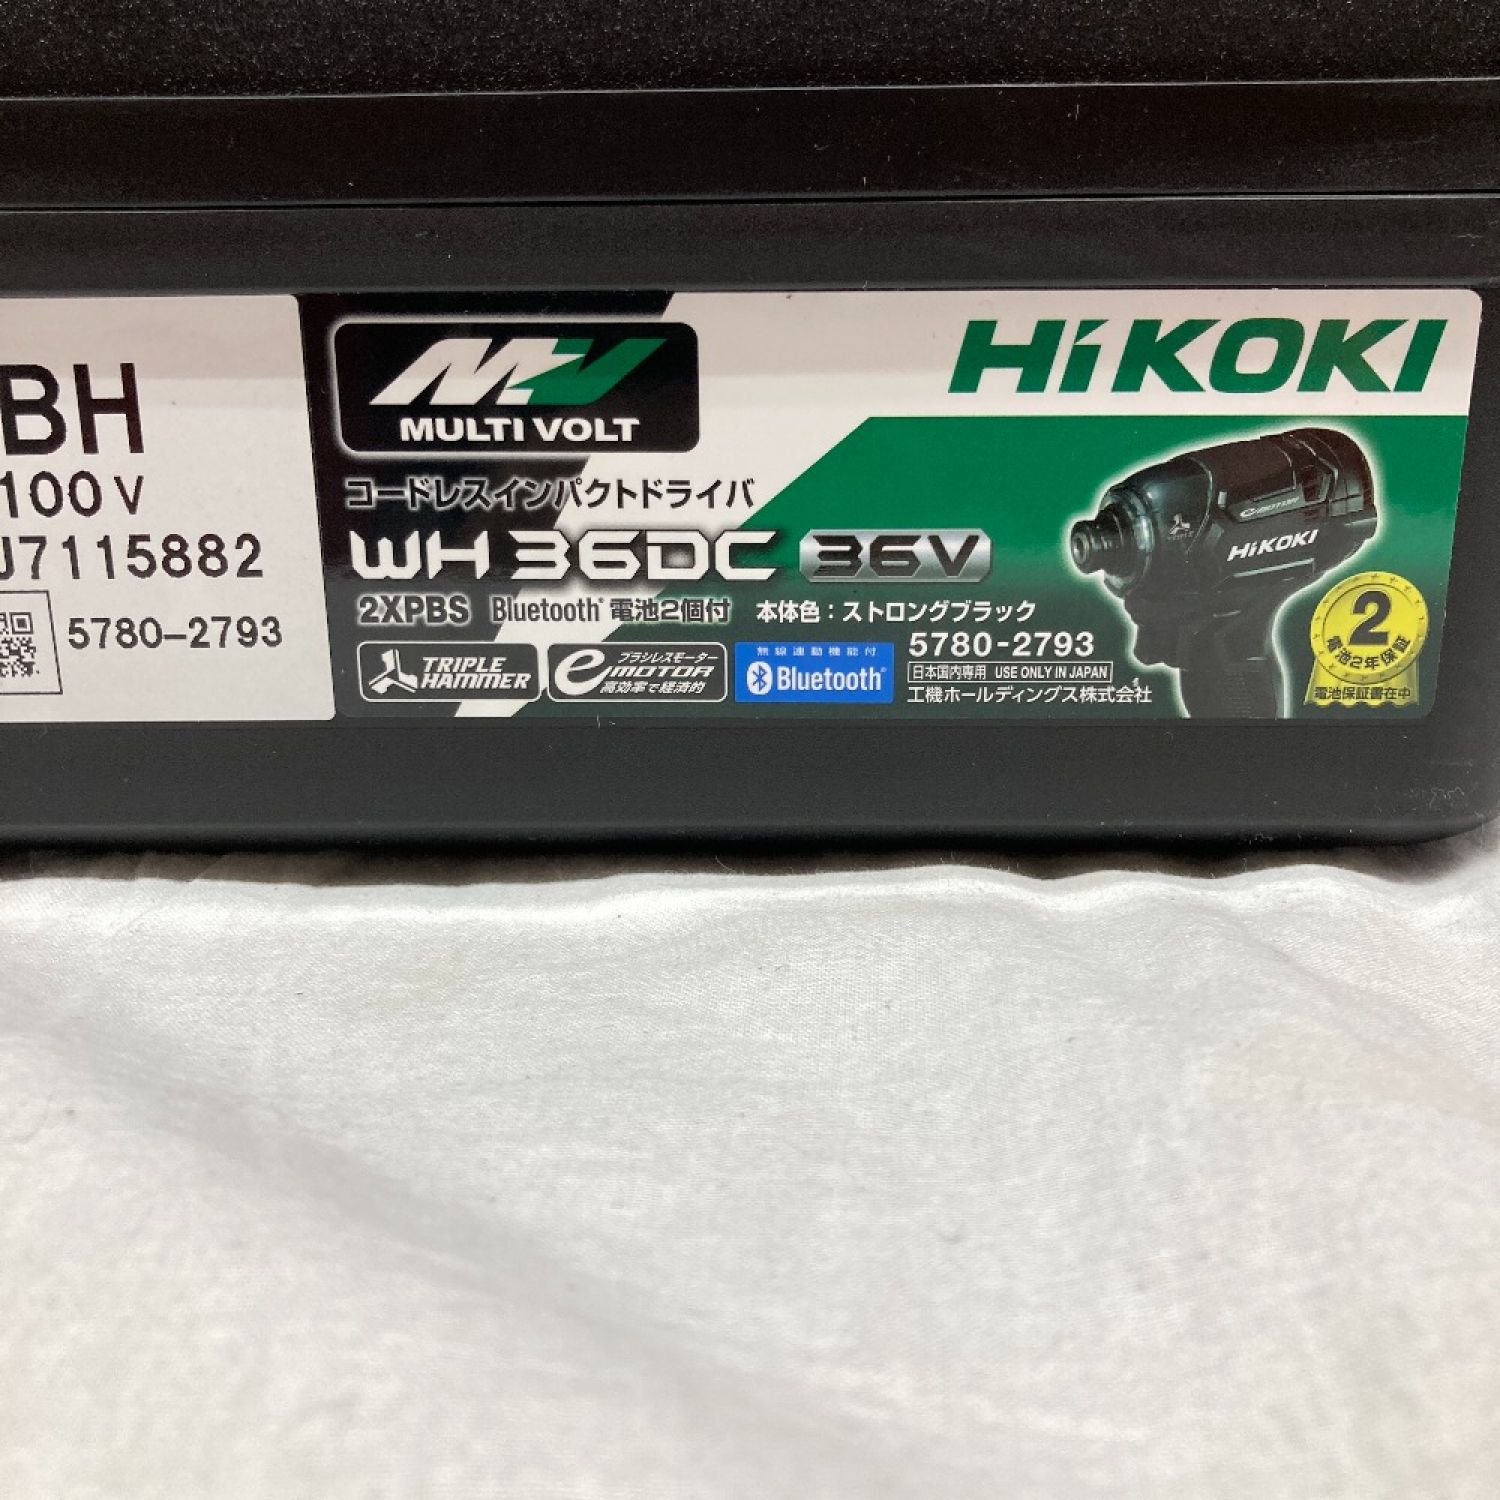 中古】 HiKOKI ハイコーキ インパクトドライバ WH36DC 2XPBS J7115436